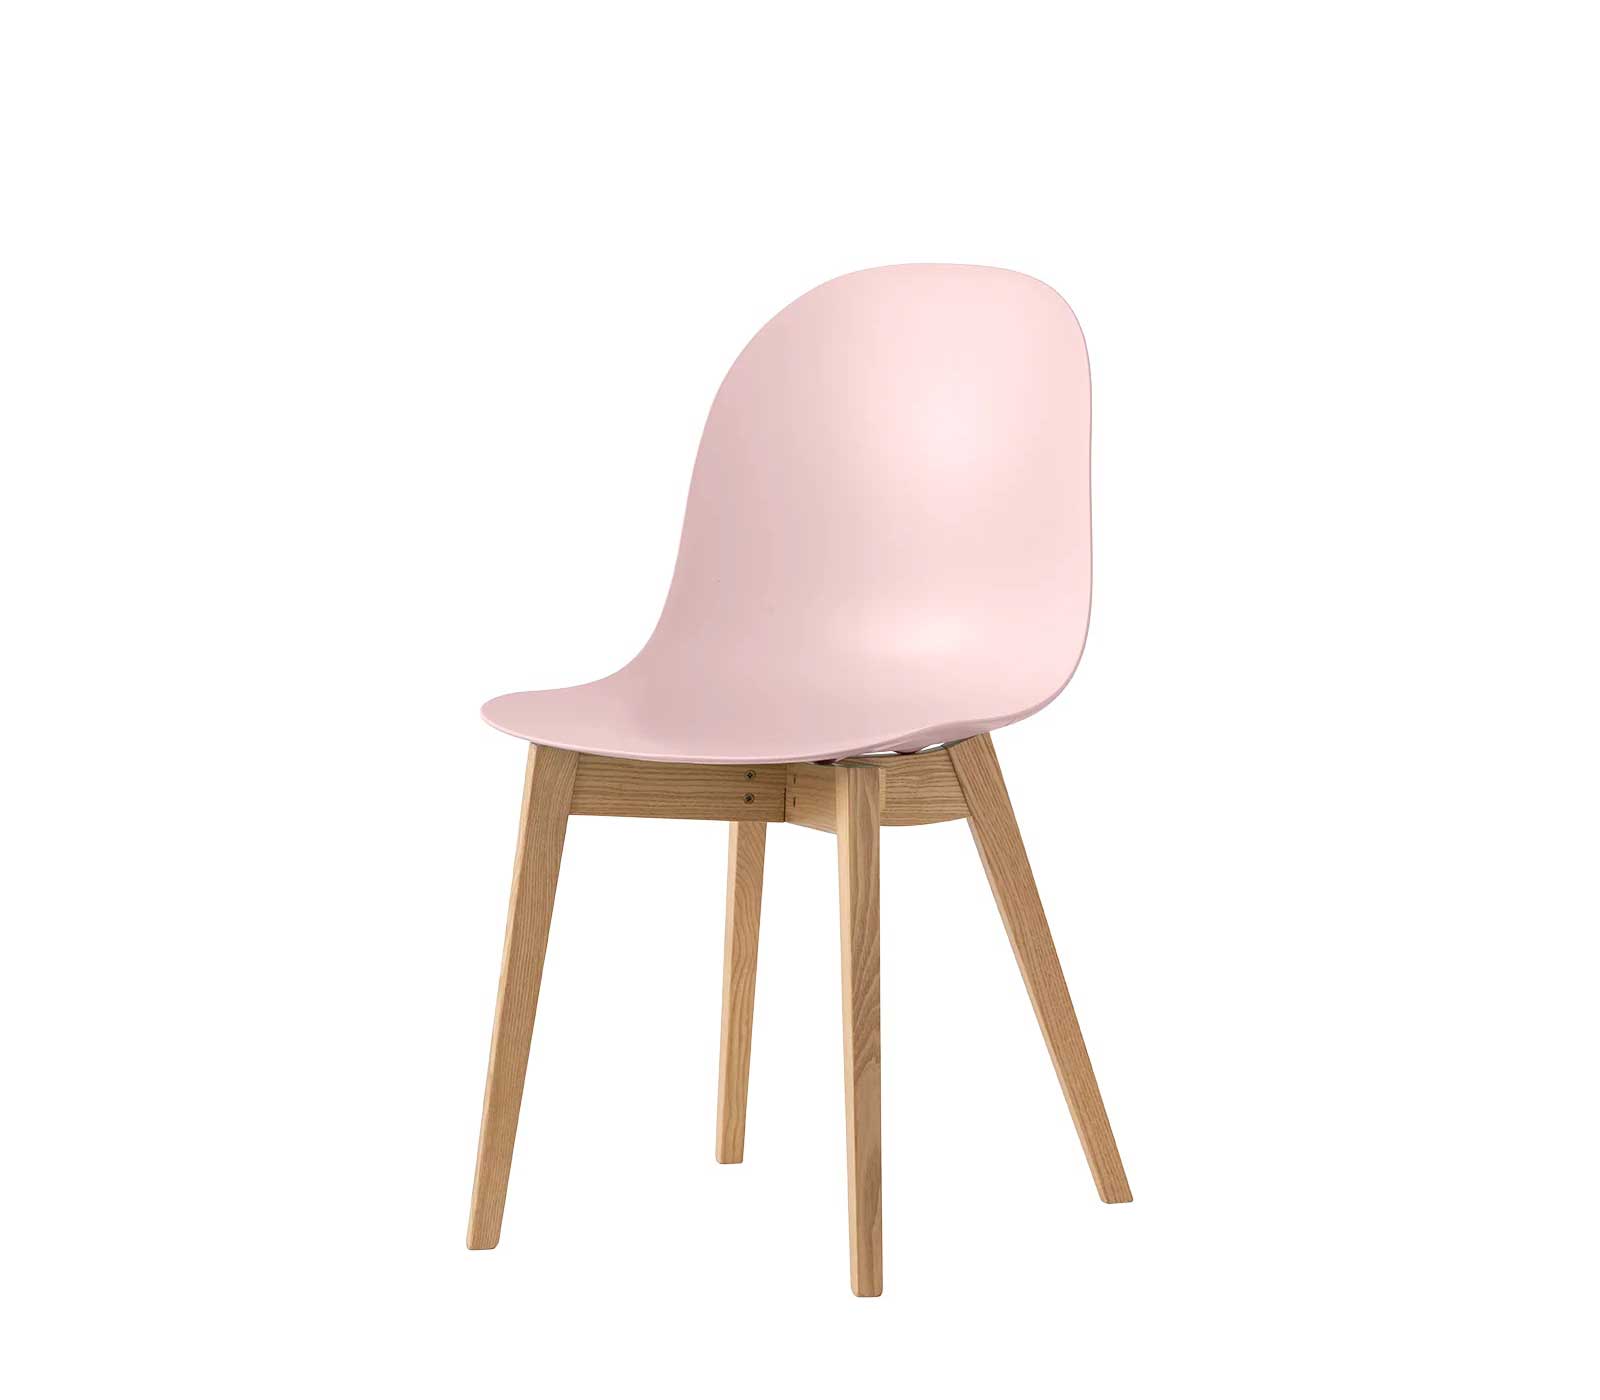 Sedia senza braccioli Connubia Academy con sedile in policarbonato e struttura in legno massello